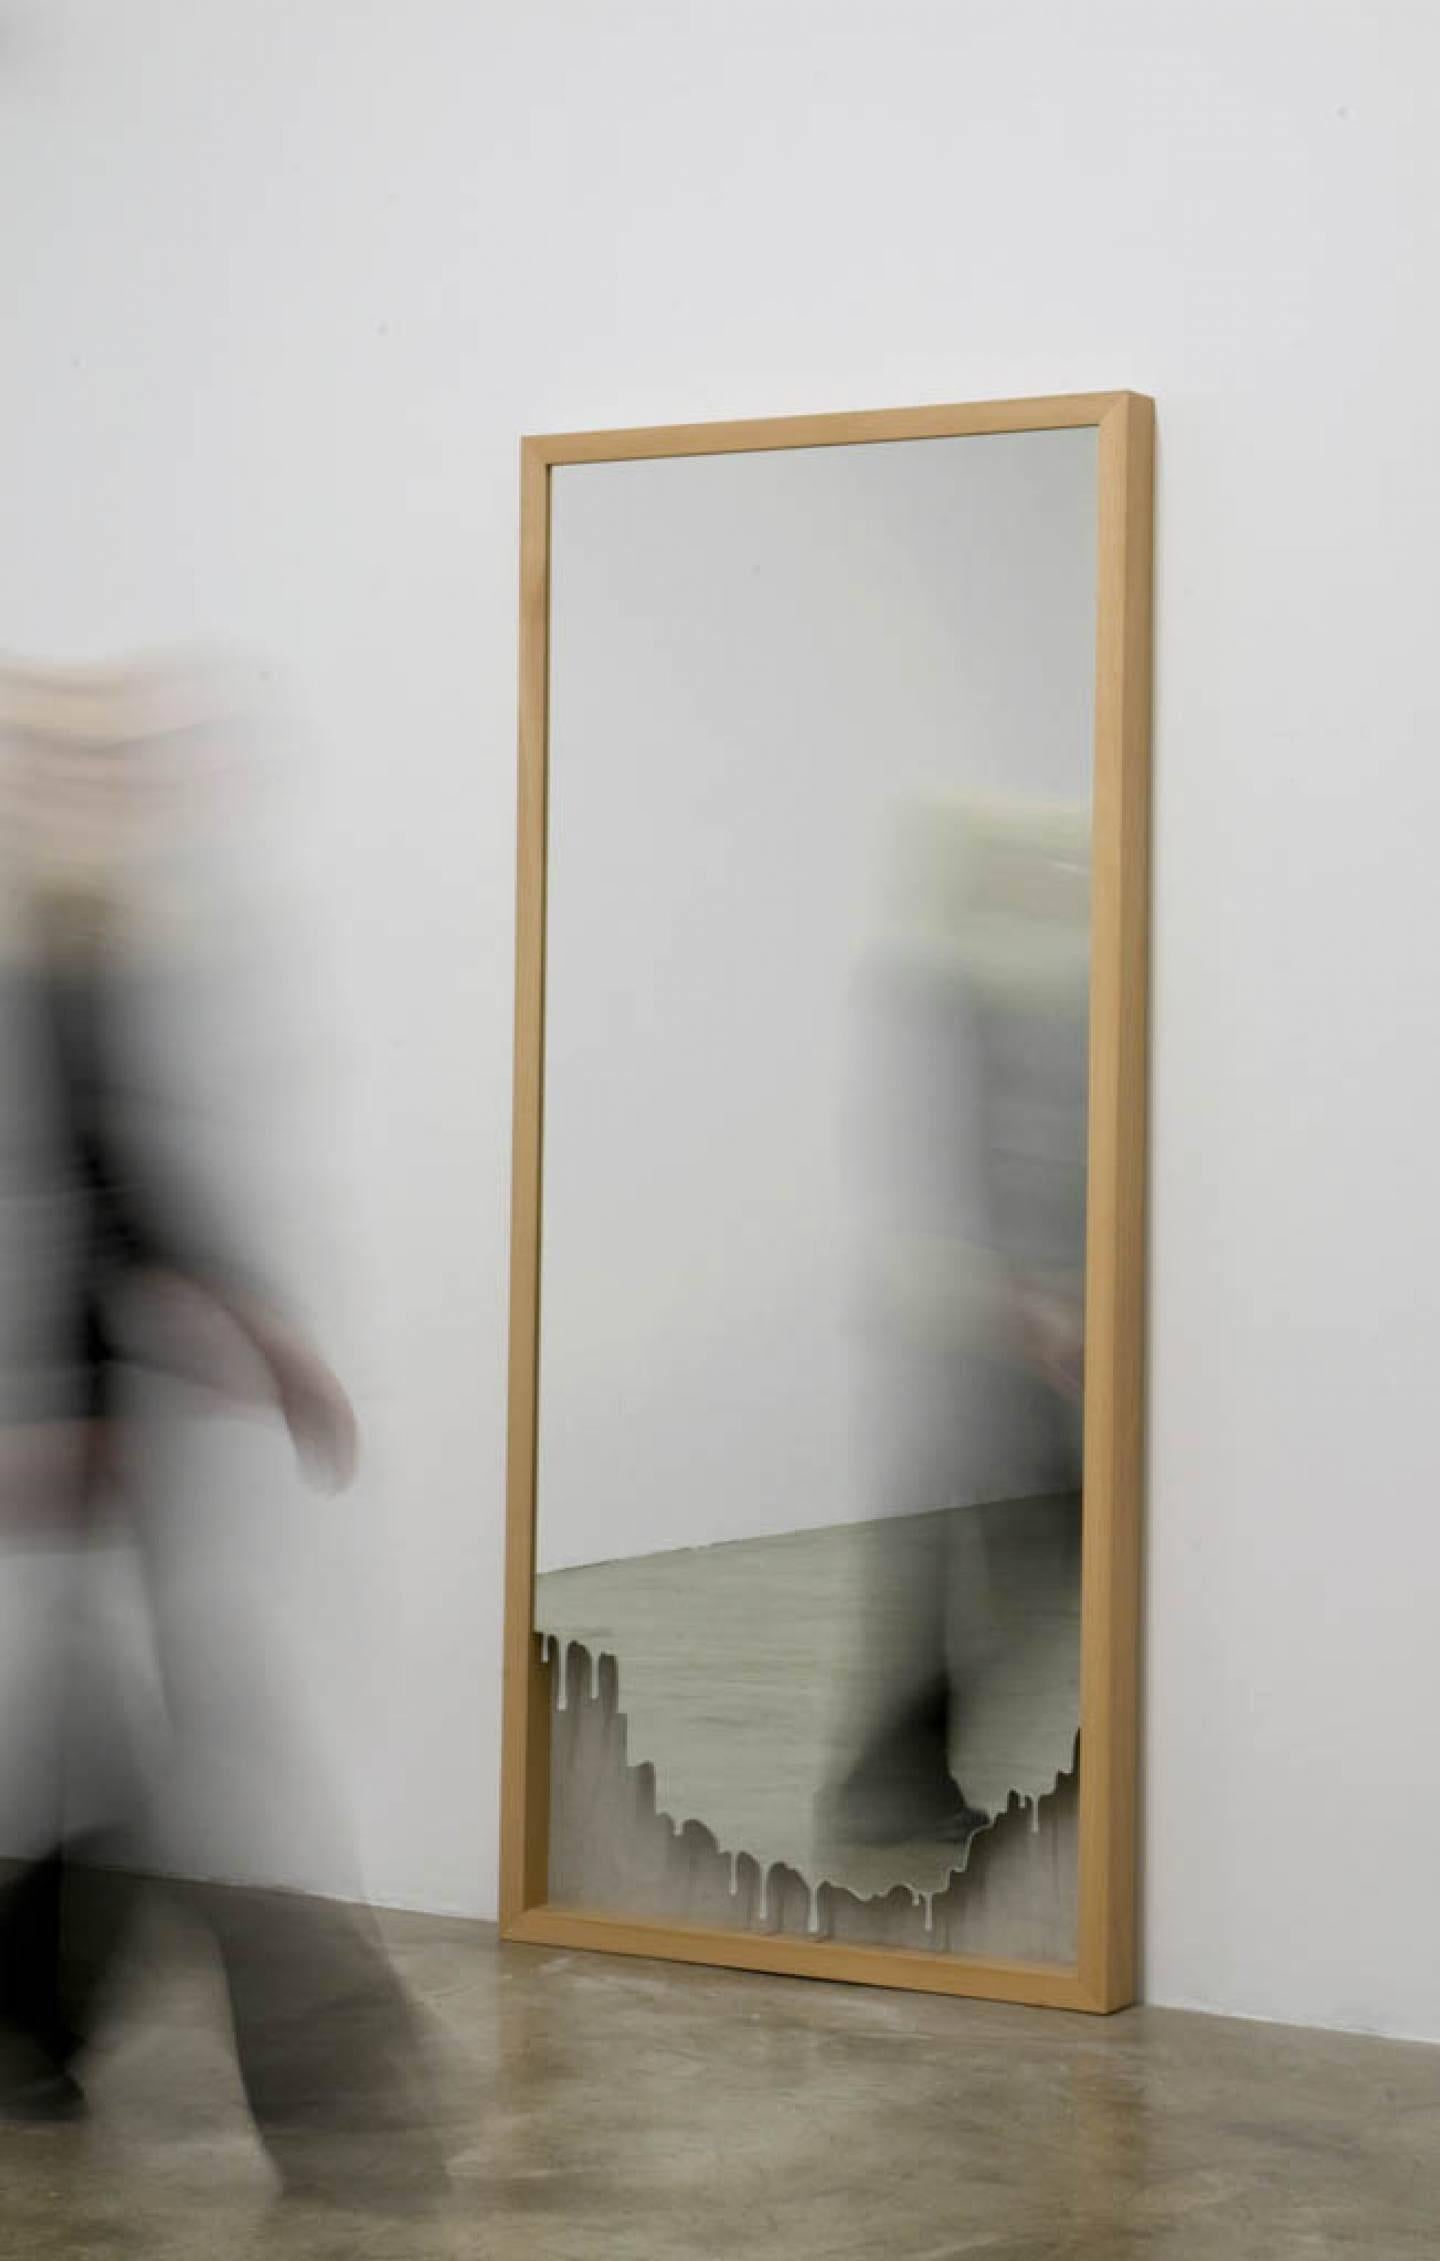 Miroir I de la collection limitée : IX miroirs. Miroir rectangulaire encadré pour Dilmos Milano dans lequel des récits ont été introduits. Le reflet du spectateur n'est plus objectif, il contient plus qu'un reflet et l'aspect fonctionnel devient